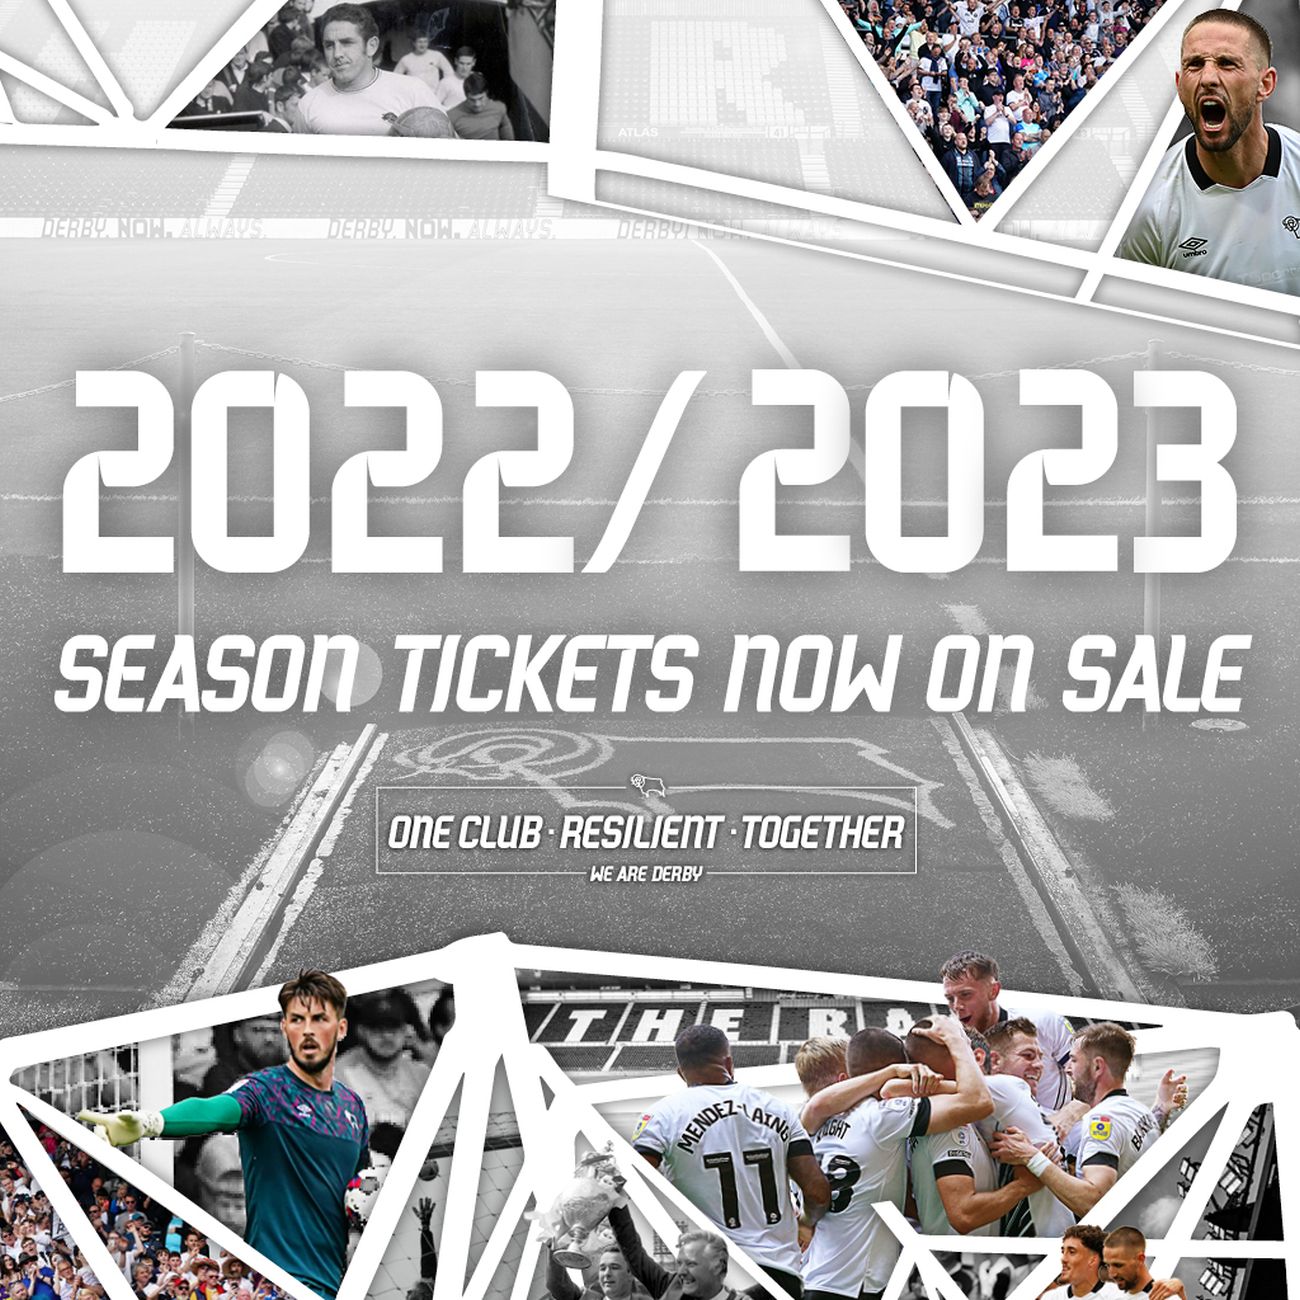 2022/23 Season Tickets